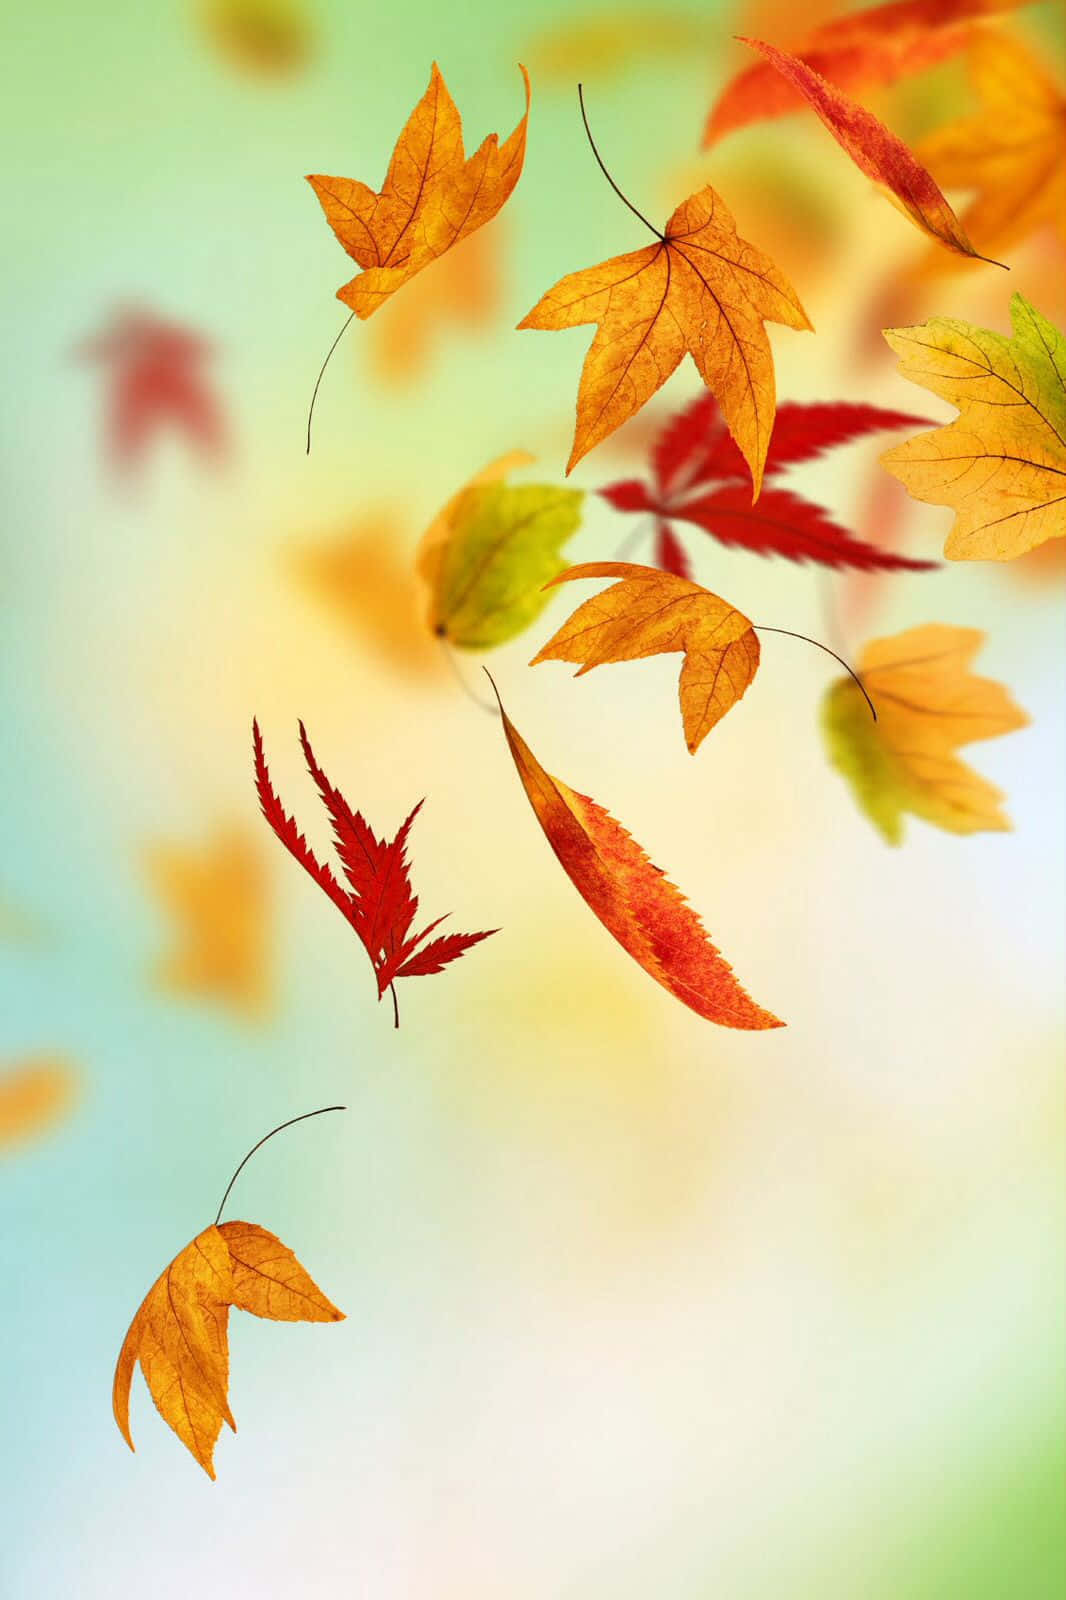 Tag med på guldsæsonen i efteråret med Autumn Leaves Phone wallpaper! Wallpaper